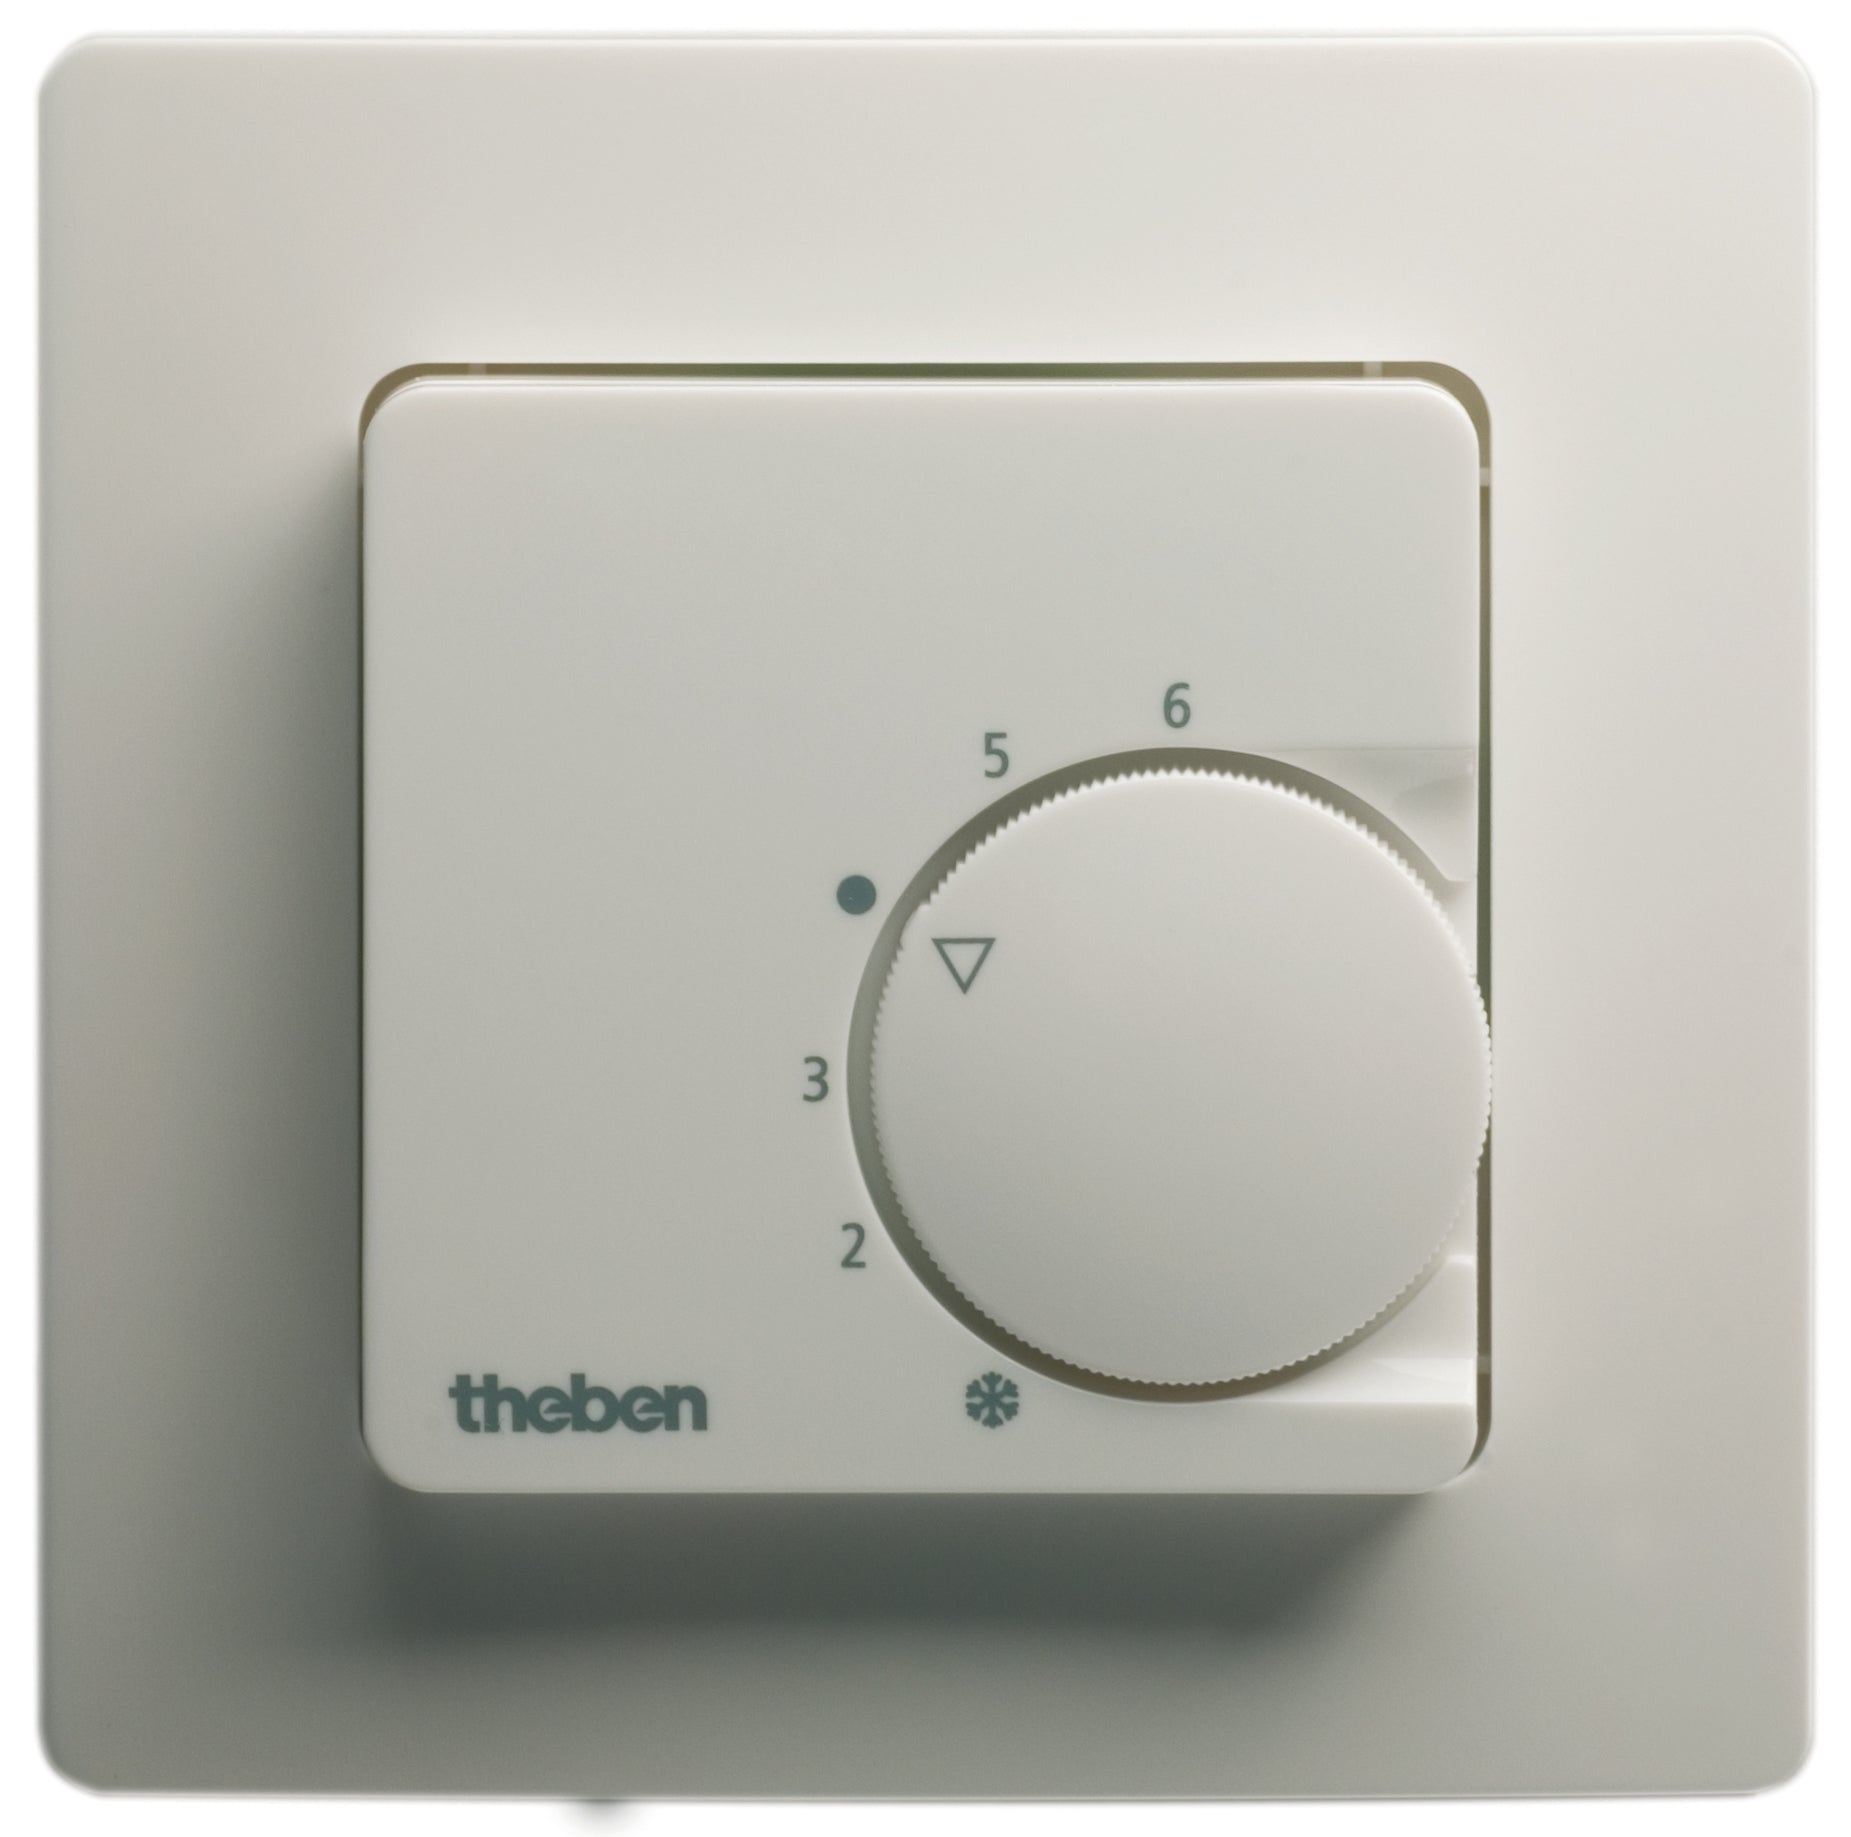 THEBEN UP-Raum-Thermostate für Heizen bzw. Kühlen, m. Rahmen